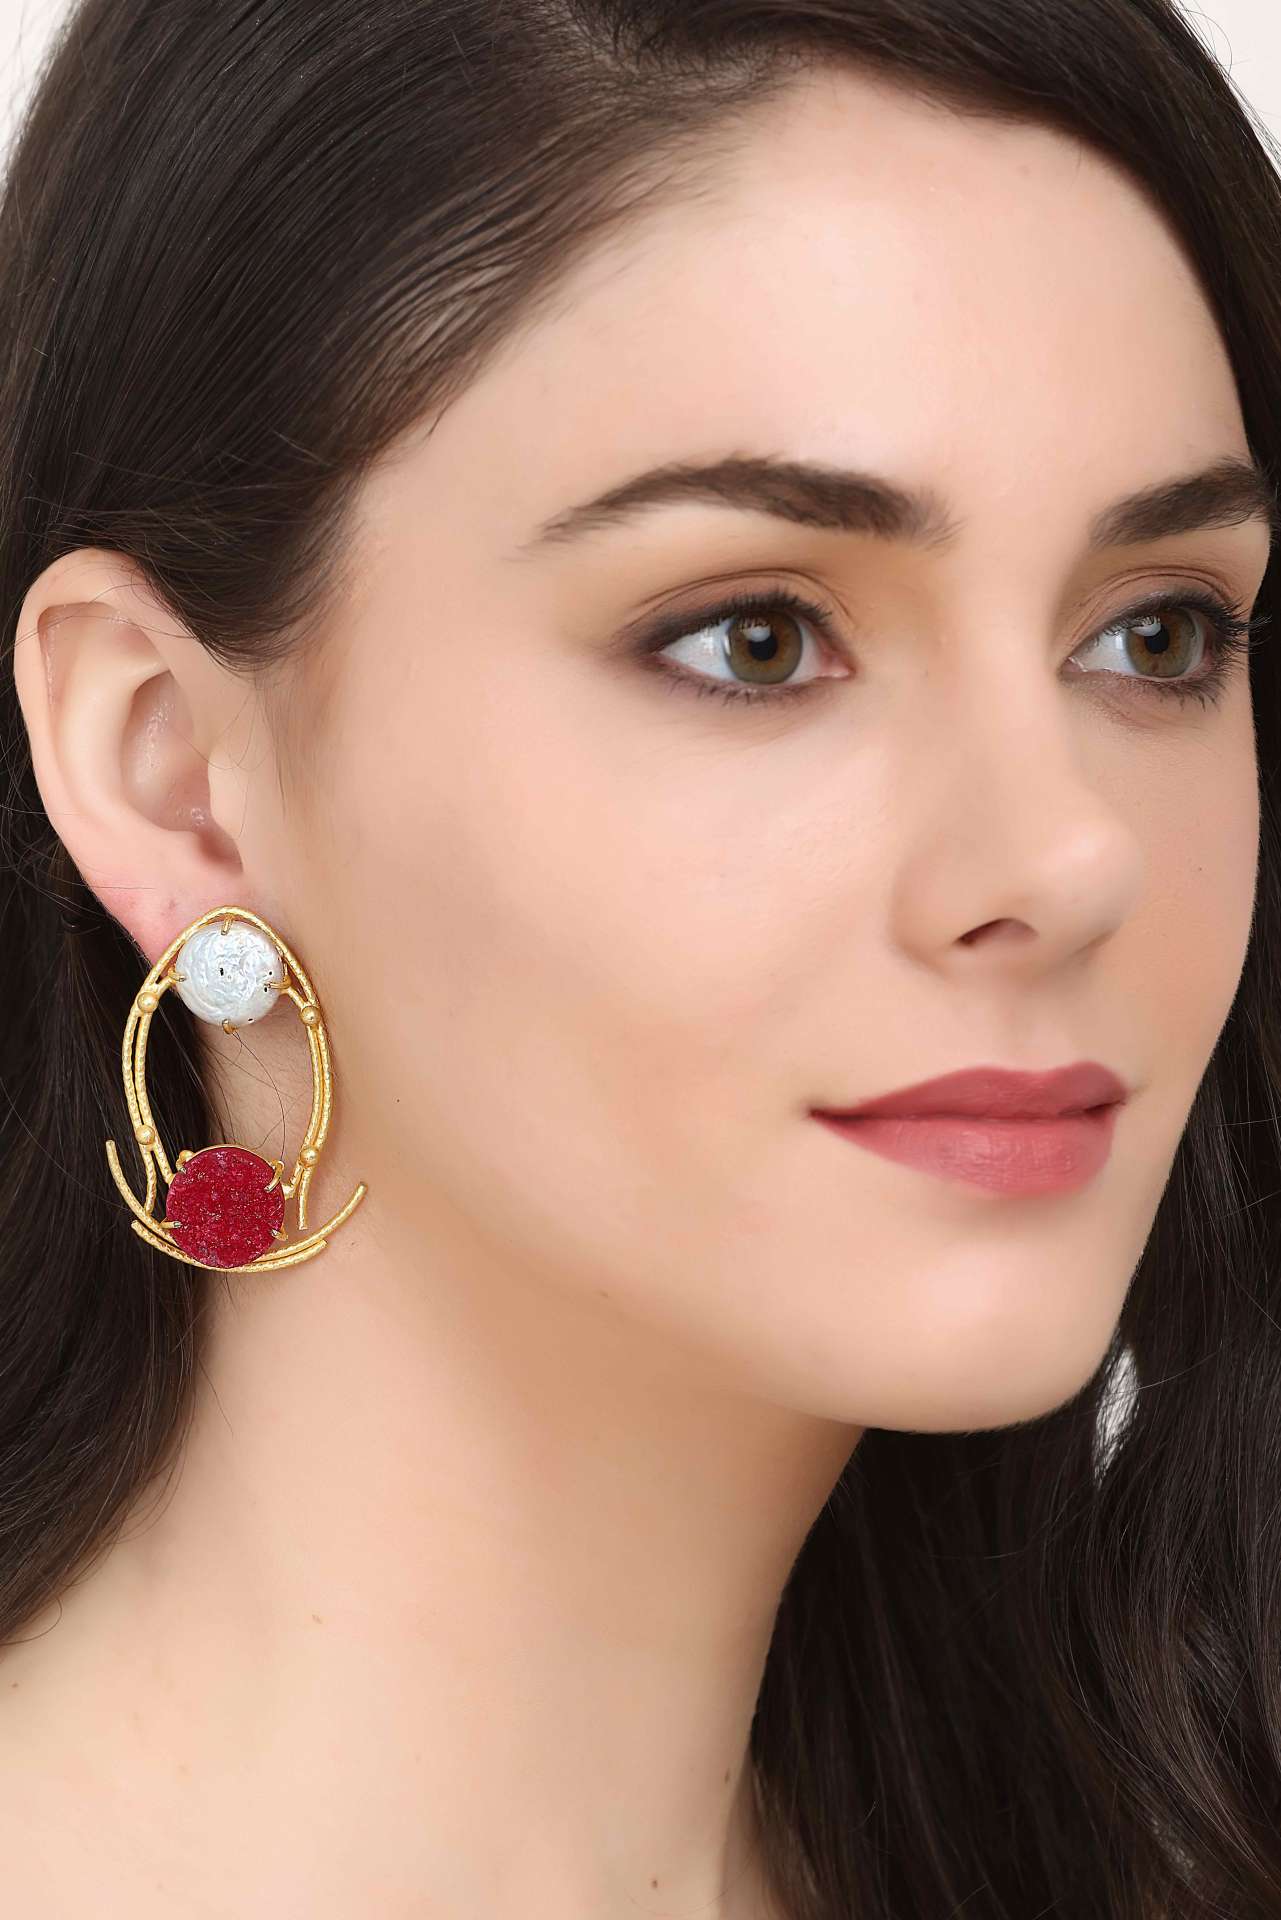 Lastinch Maroon Stone Geometric Shape Earring artificial jewellery